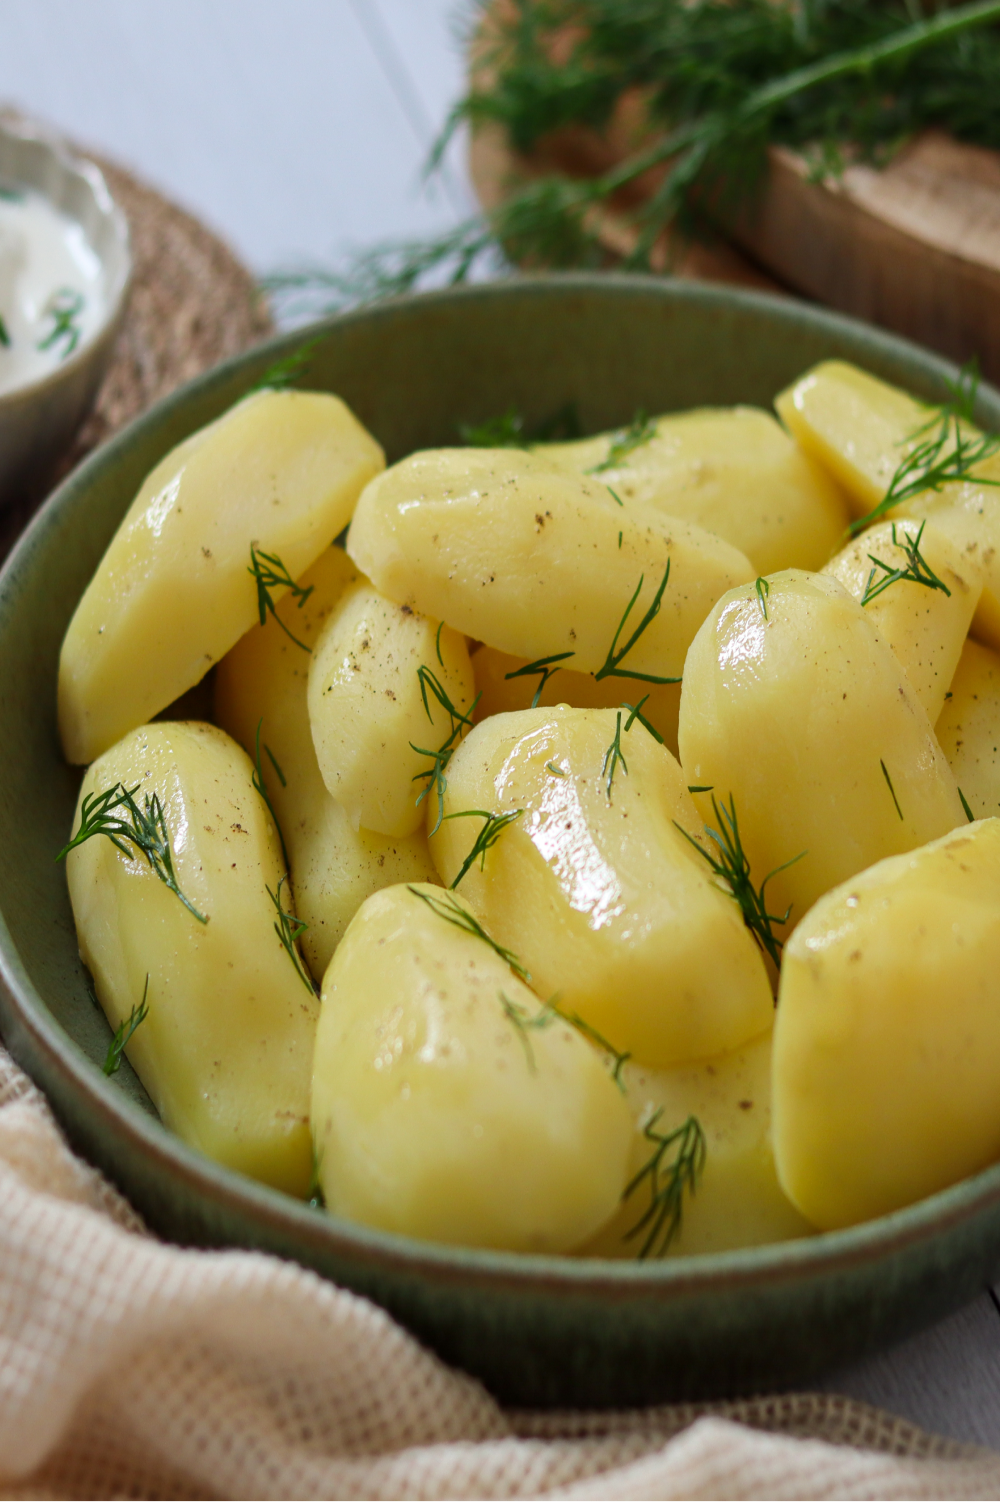 Pomme de terre pour raclette : comment la choisir ?